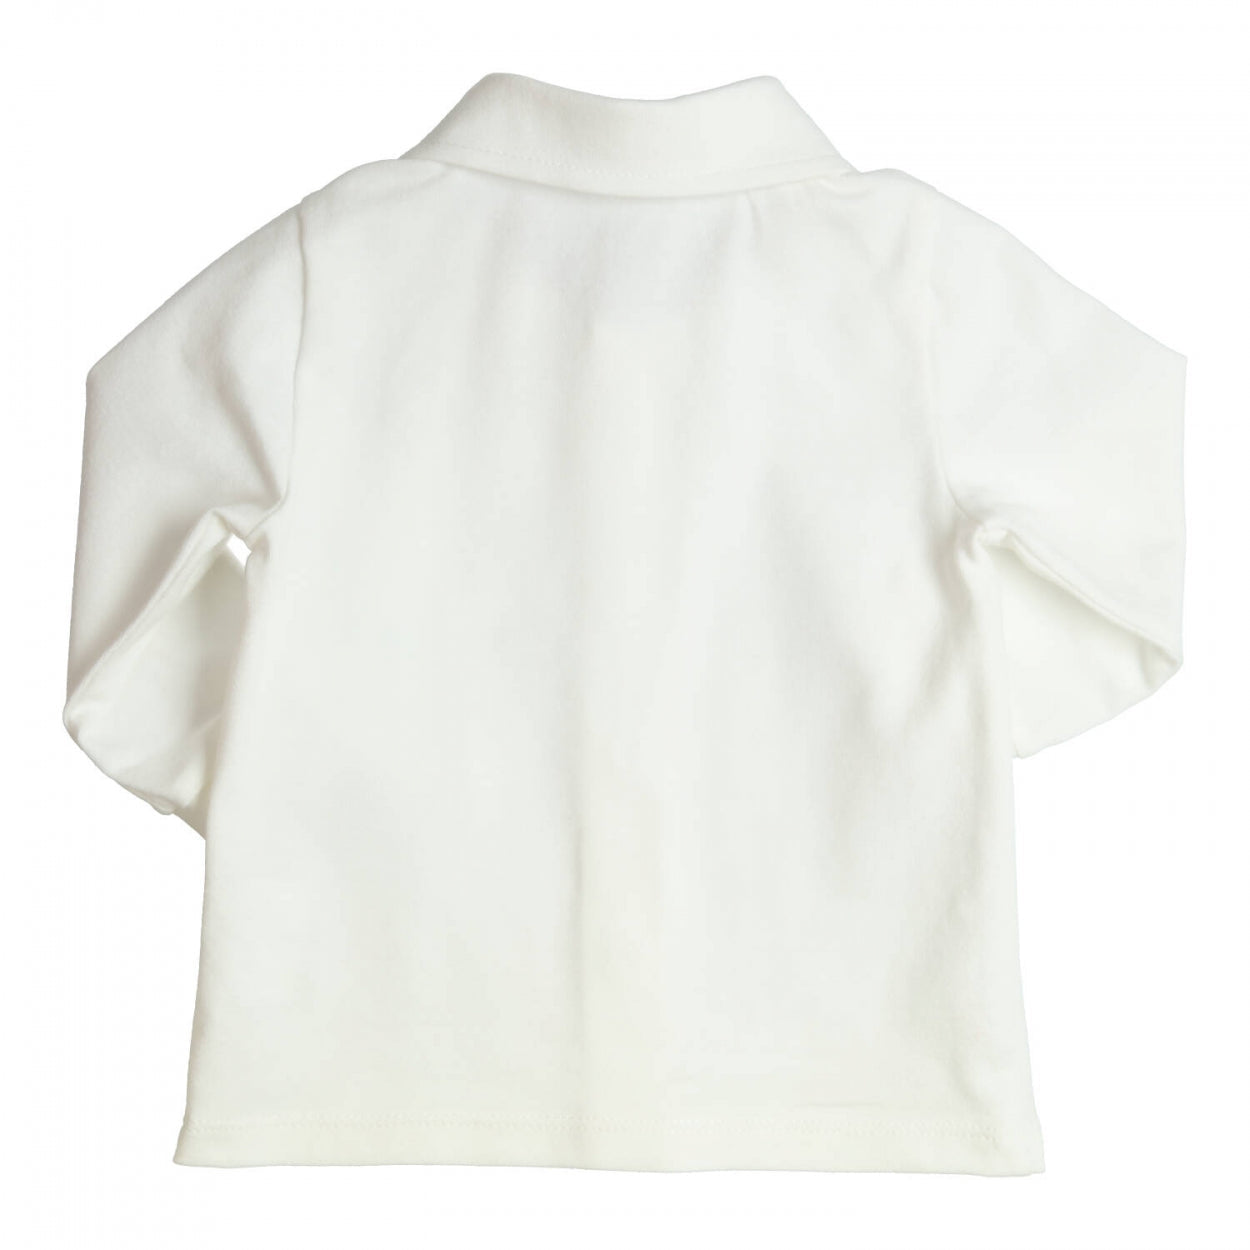 Jongens Shirt Aerodoux van Gymp in de kleur Off White in maat 86.